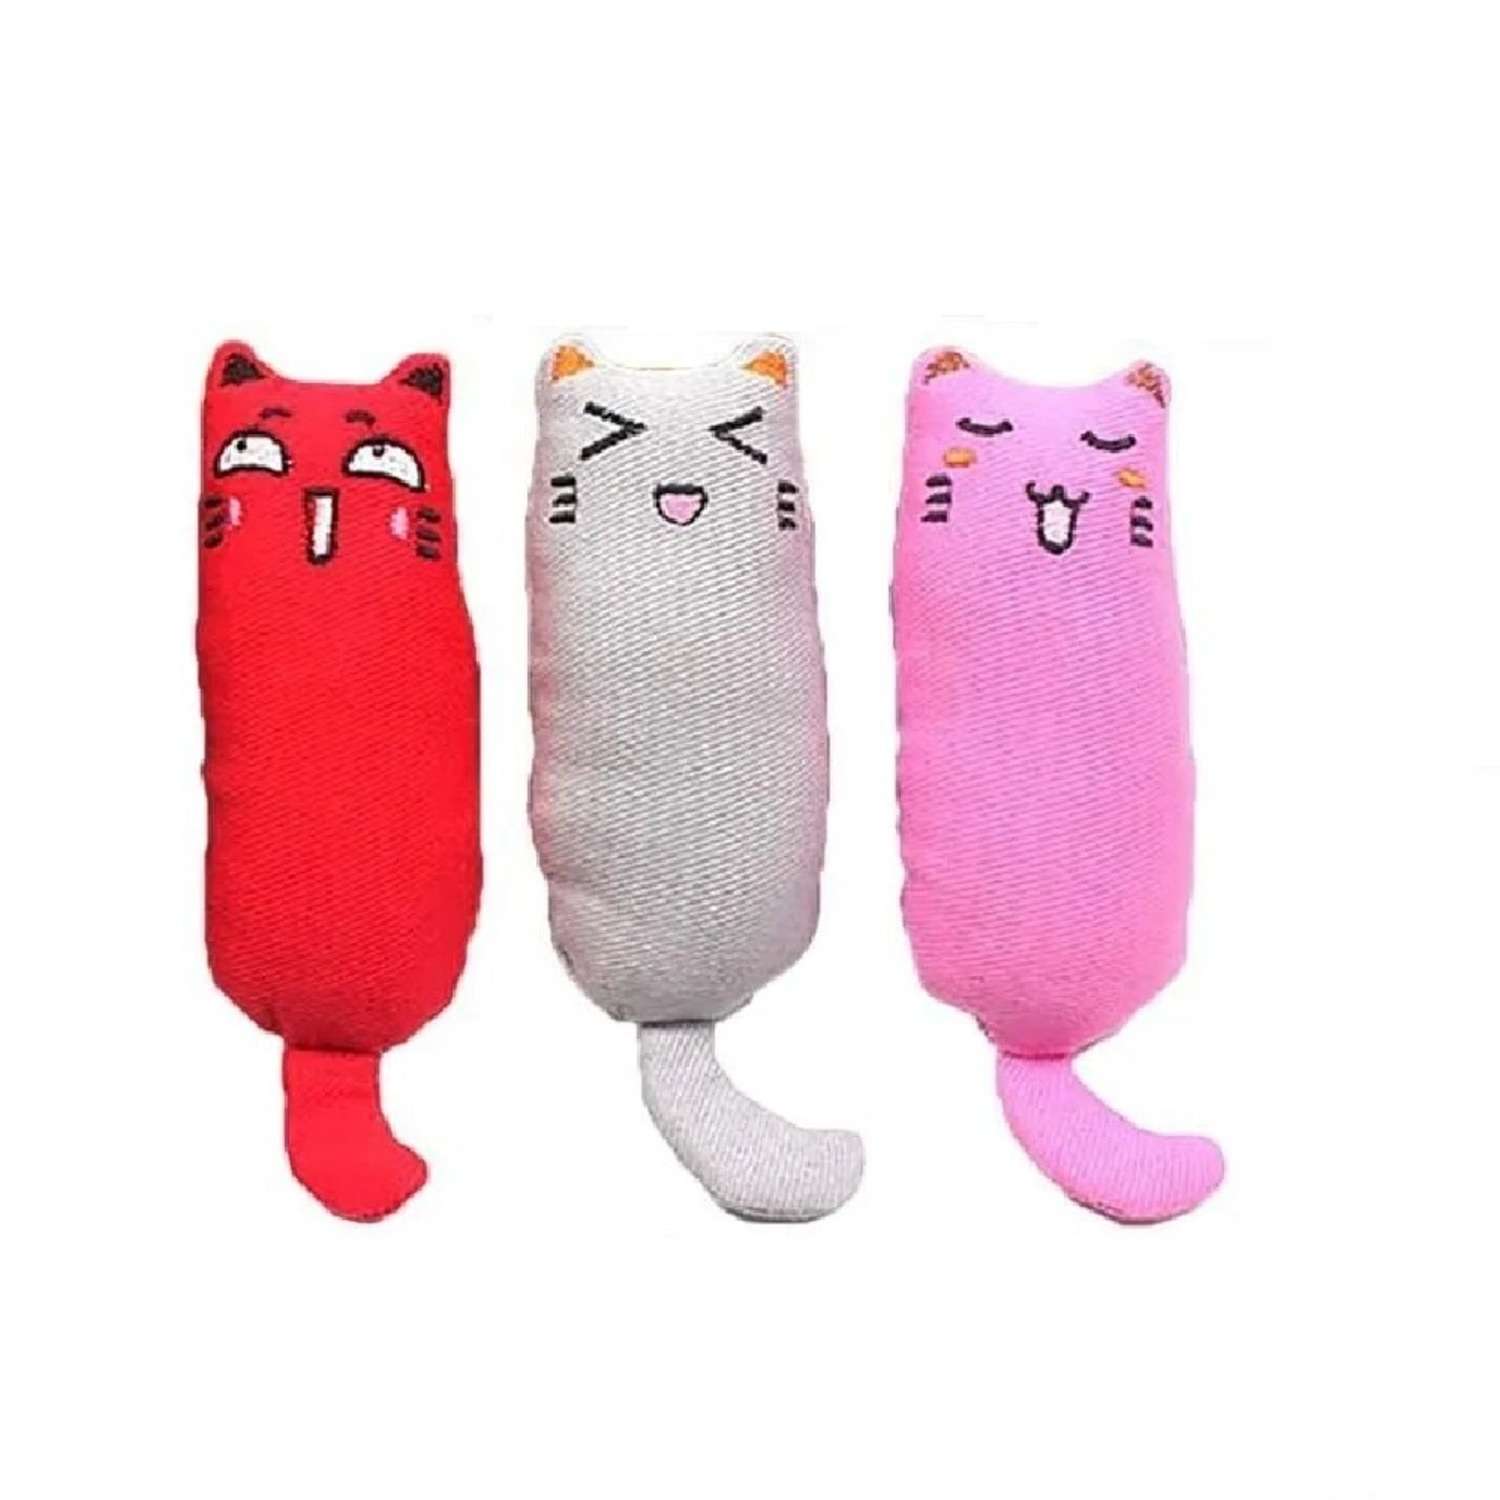 Игрушки для кошек ZDK с кошачьей мятой Набор 3шт розовый серый красный ZooWell - фото 1